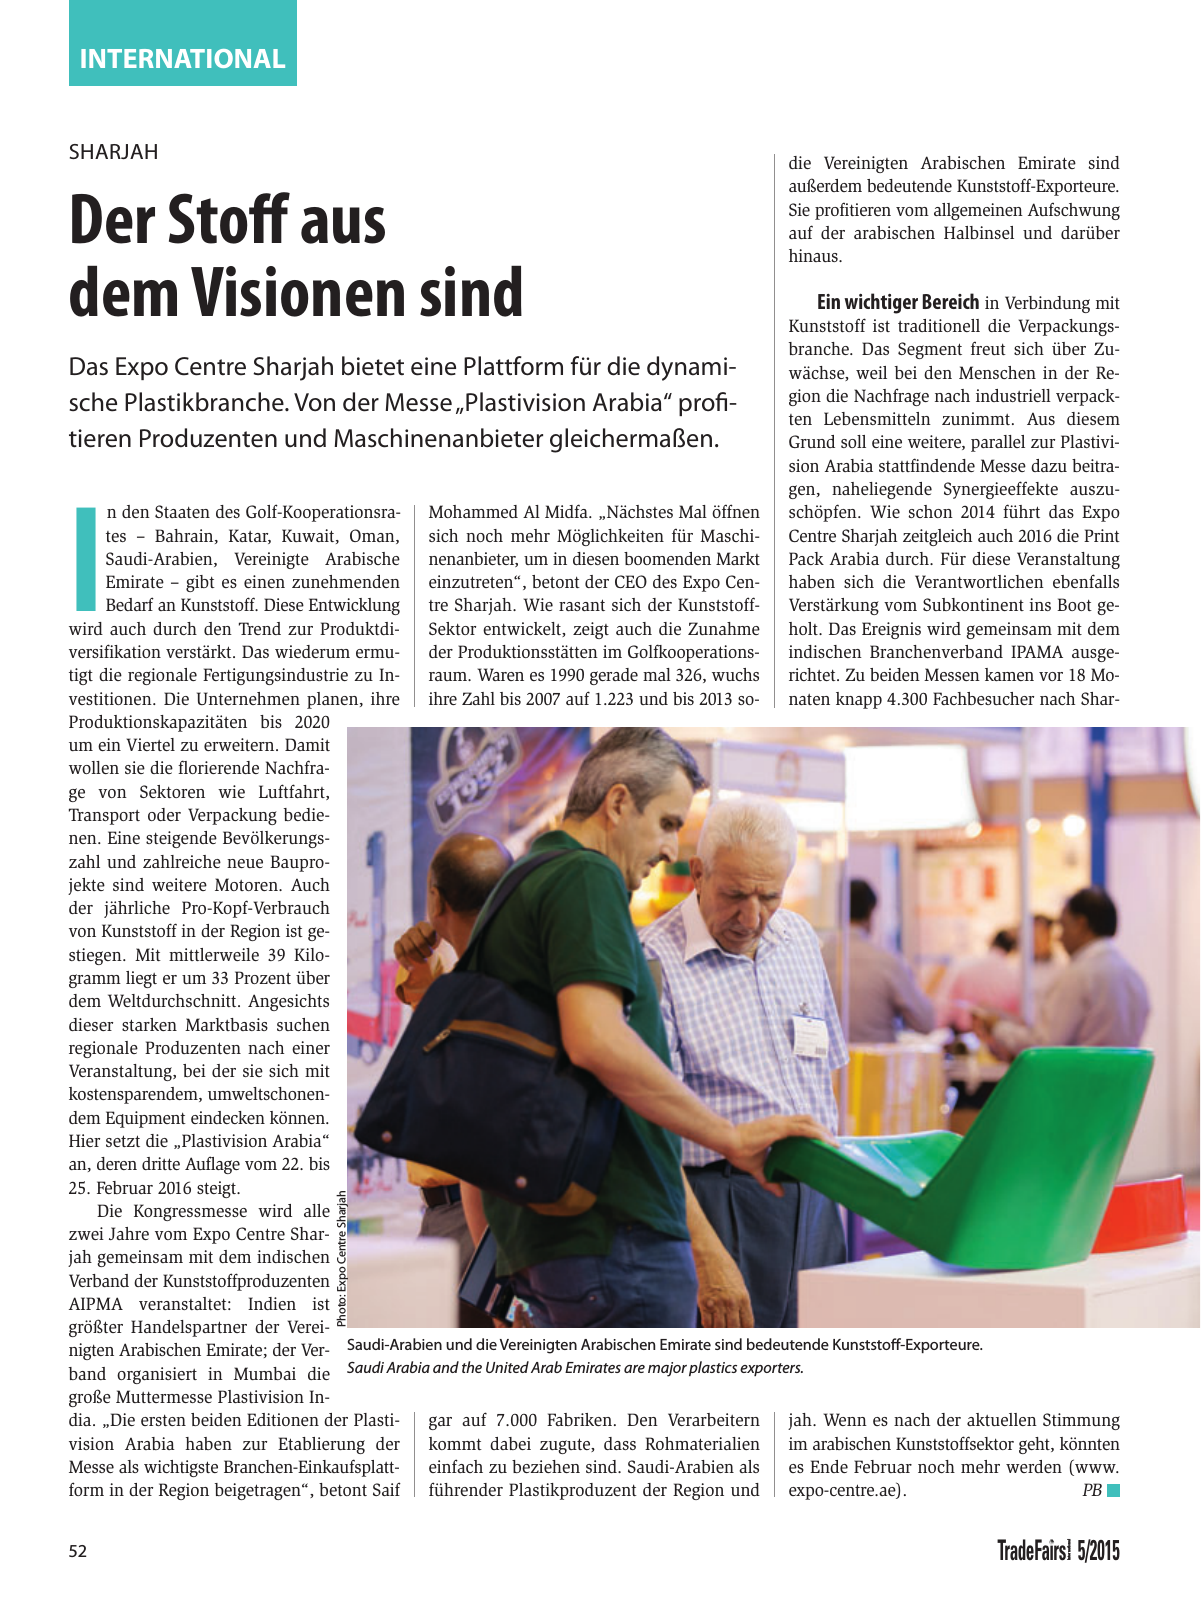 Vorschau TFI Trade-Fairs-International 05/2015 Seite 52